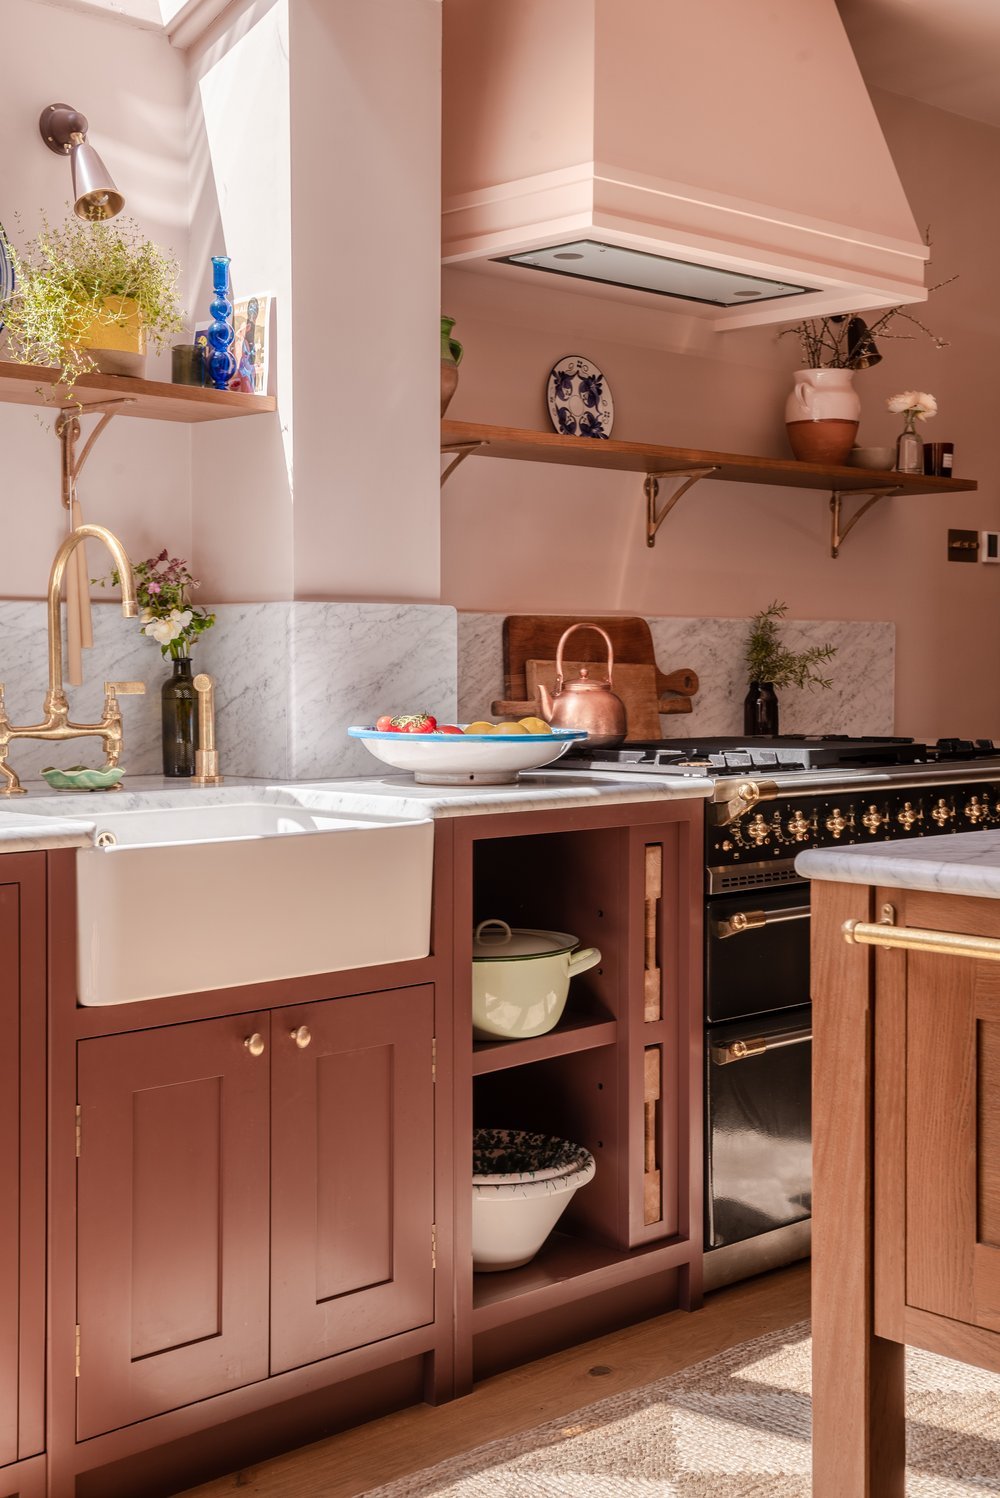 Bespoke Kitchen Design, Customize Your Dream Kitchen